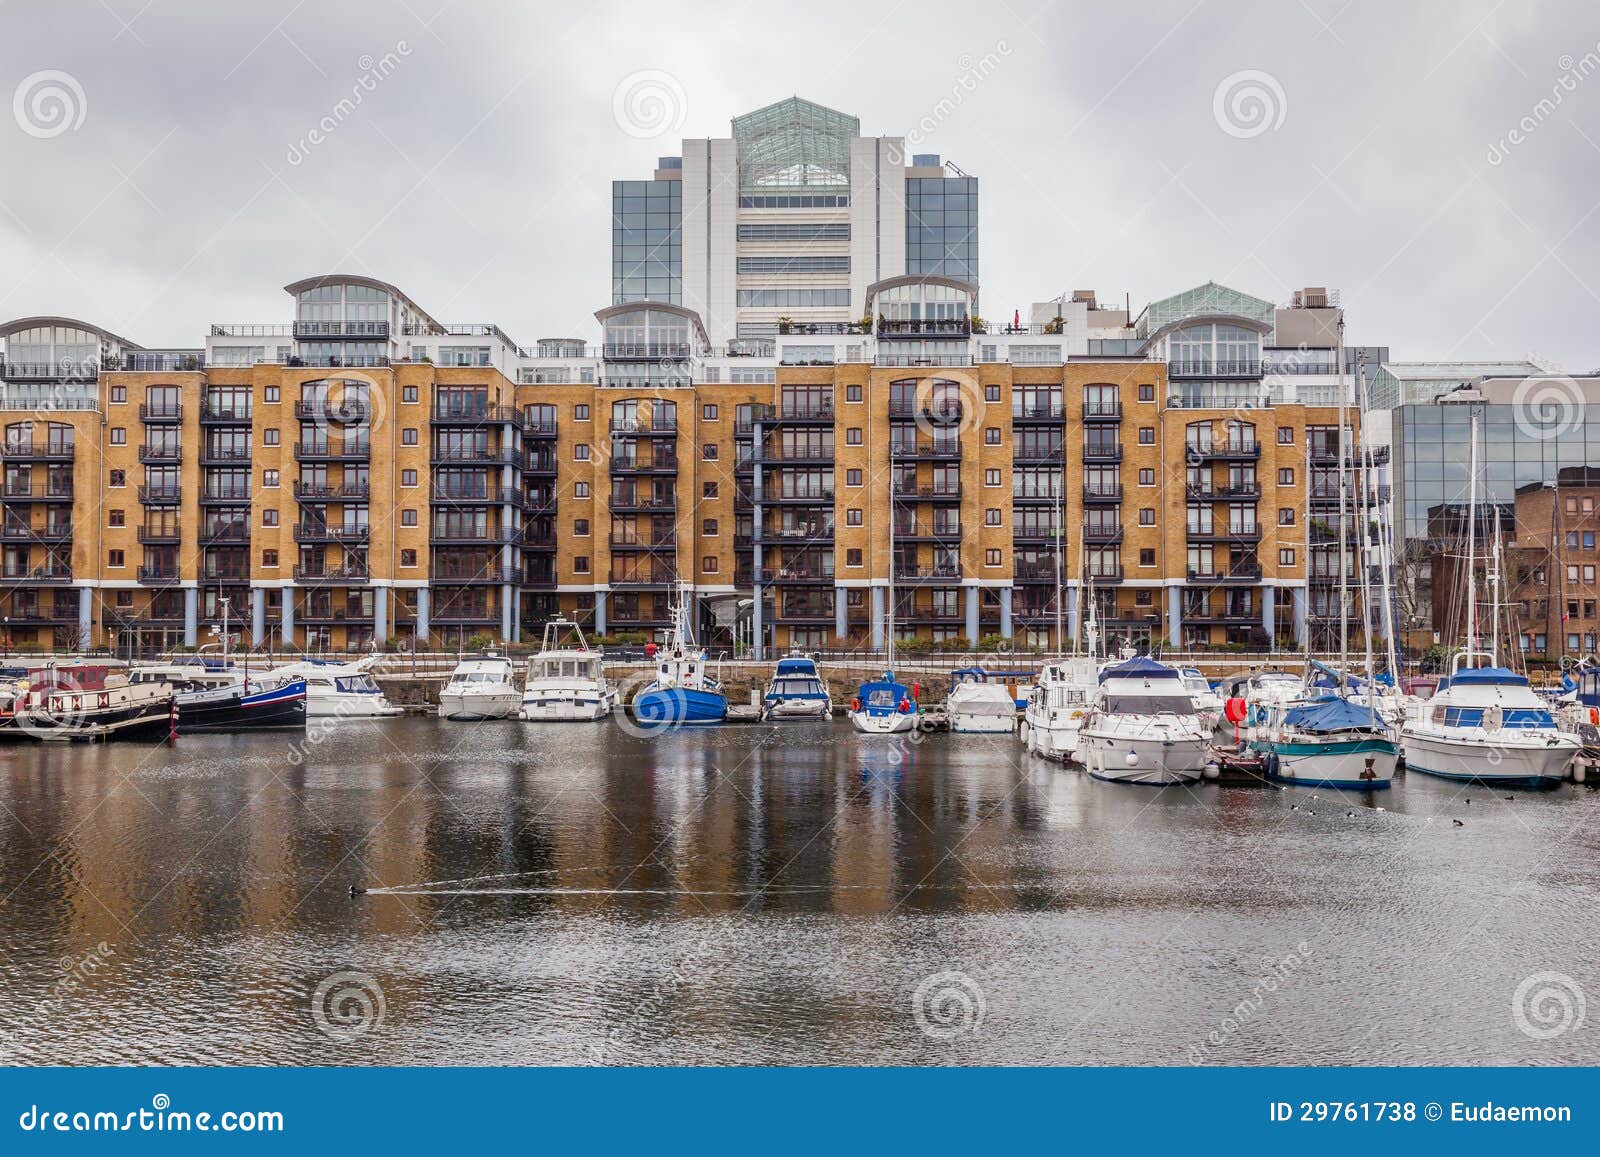 st. katharine docks, tower hamlets, london.